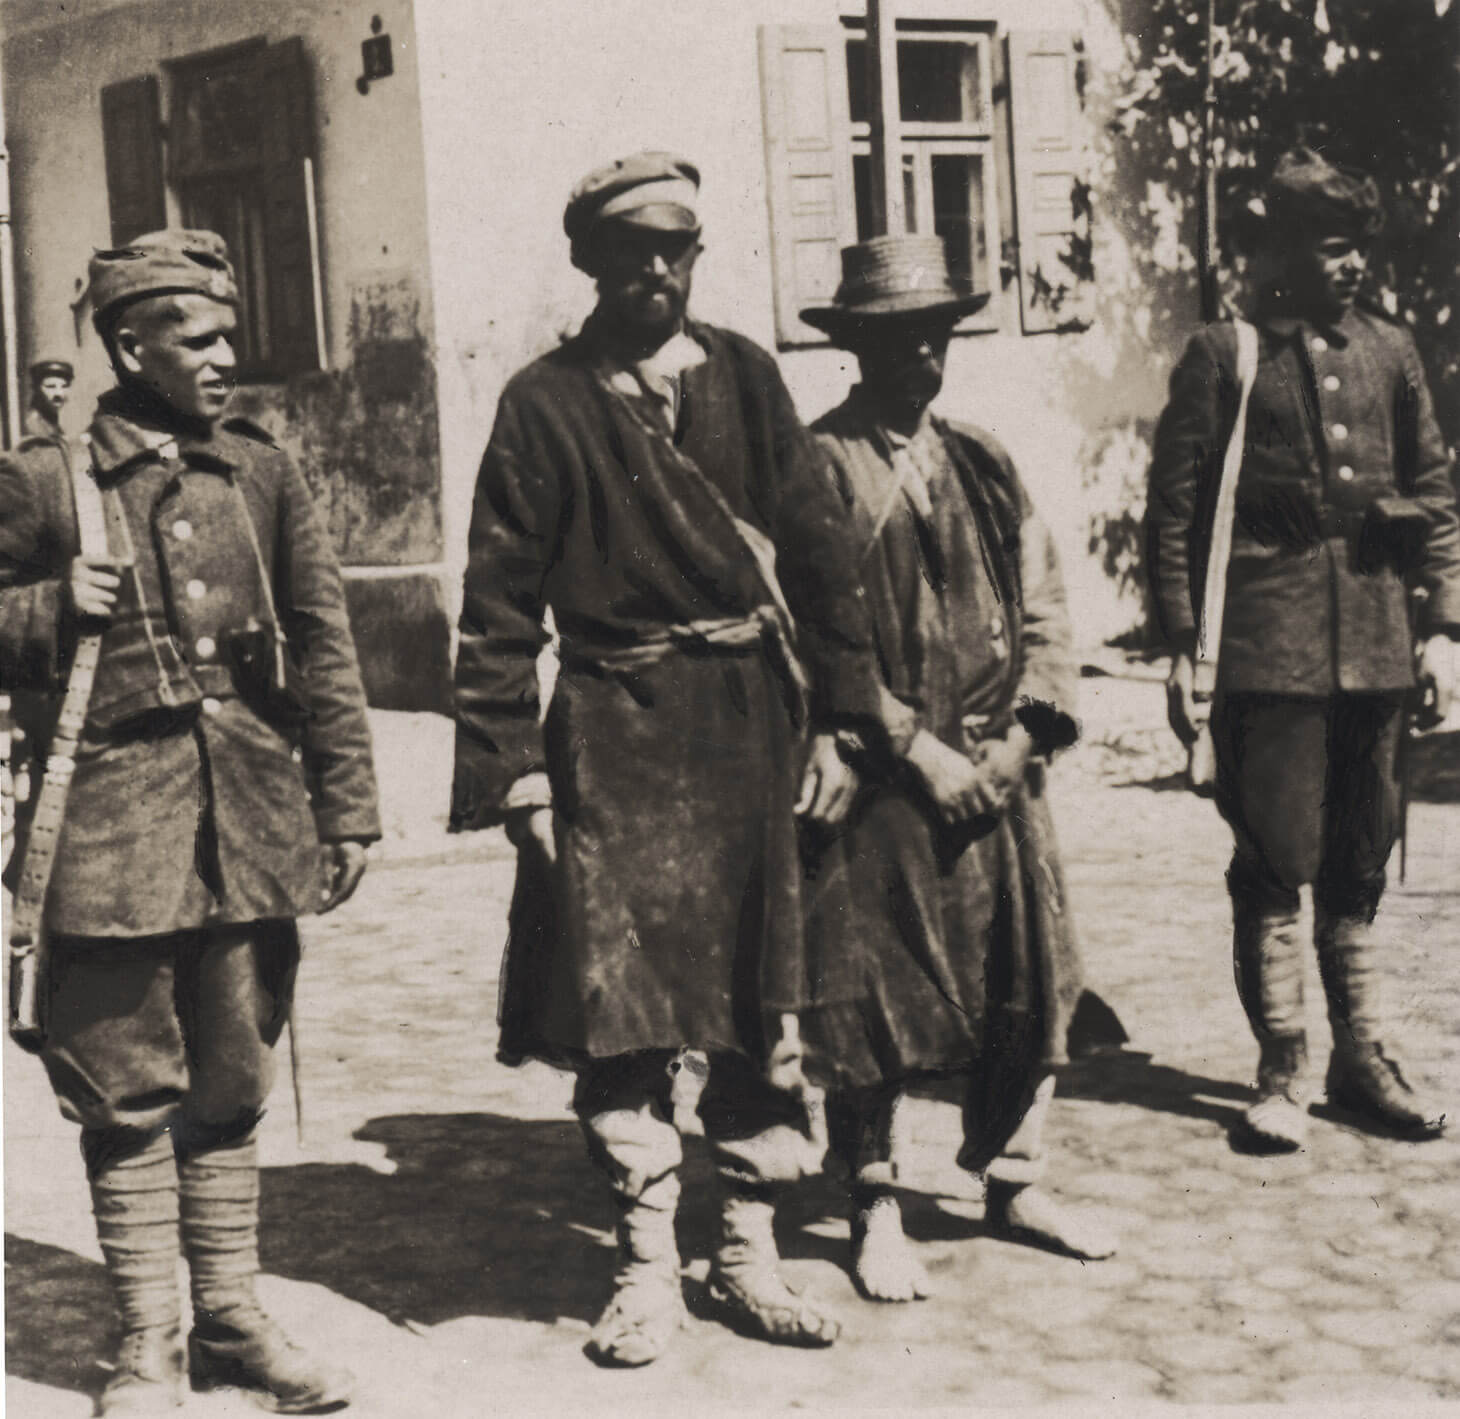 Czarno-białe zdjęcie plenerowe przedstawiające dwóch bolszewików pilnowanych przez dwóch polskich żołnierzy. Na pierwszym planie stoją od lewej: uśmiechnięty żołnierz polski w mundurze polowym, z karabinem przewieszonym przez ramię. Drugi od lewej, stoi jeniec z opuszczonymi rękami. Ubrany jest w ciemny, obdarty, brudny, płaszcz chłopski, przepasany powrozem. Na nogach ma bezkształtne owijacze, na głowie czapkę z daszkiem. Mężczyzna patrzy w obiektyw. Trzeci od lewej w podobnym ubraniu, stoi boso ze złączonymi z przodu rękami, w słomkowym kapeluszu na głowie. Czwarty od lewej, to drugi polski żołnierz, także w mundurze polowym, z karabinem z bagnetem przewieszonym przez ramię. Pozujący stoją na bruku z kamieni. W tle widać narożnik domu wiejskiego z oknami z otwartymi okiennicami.

